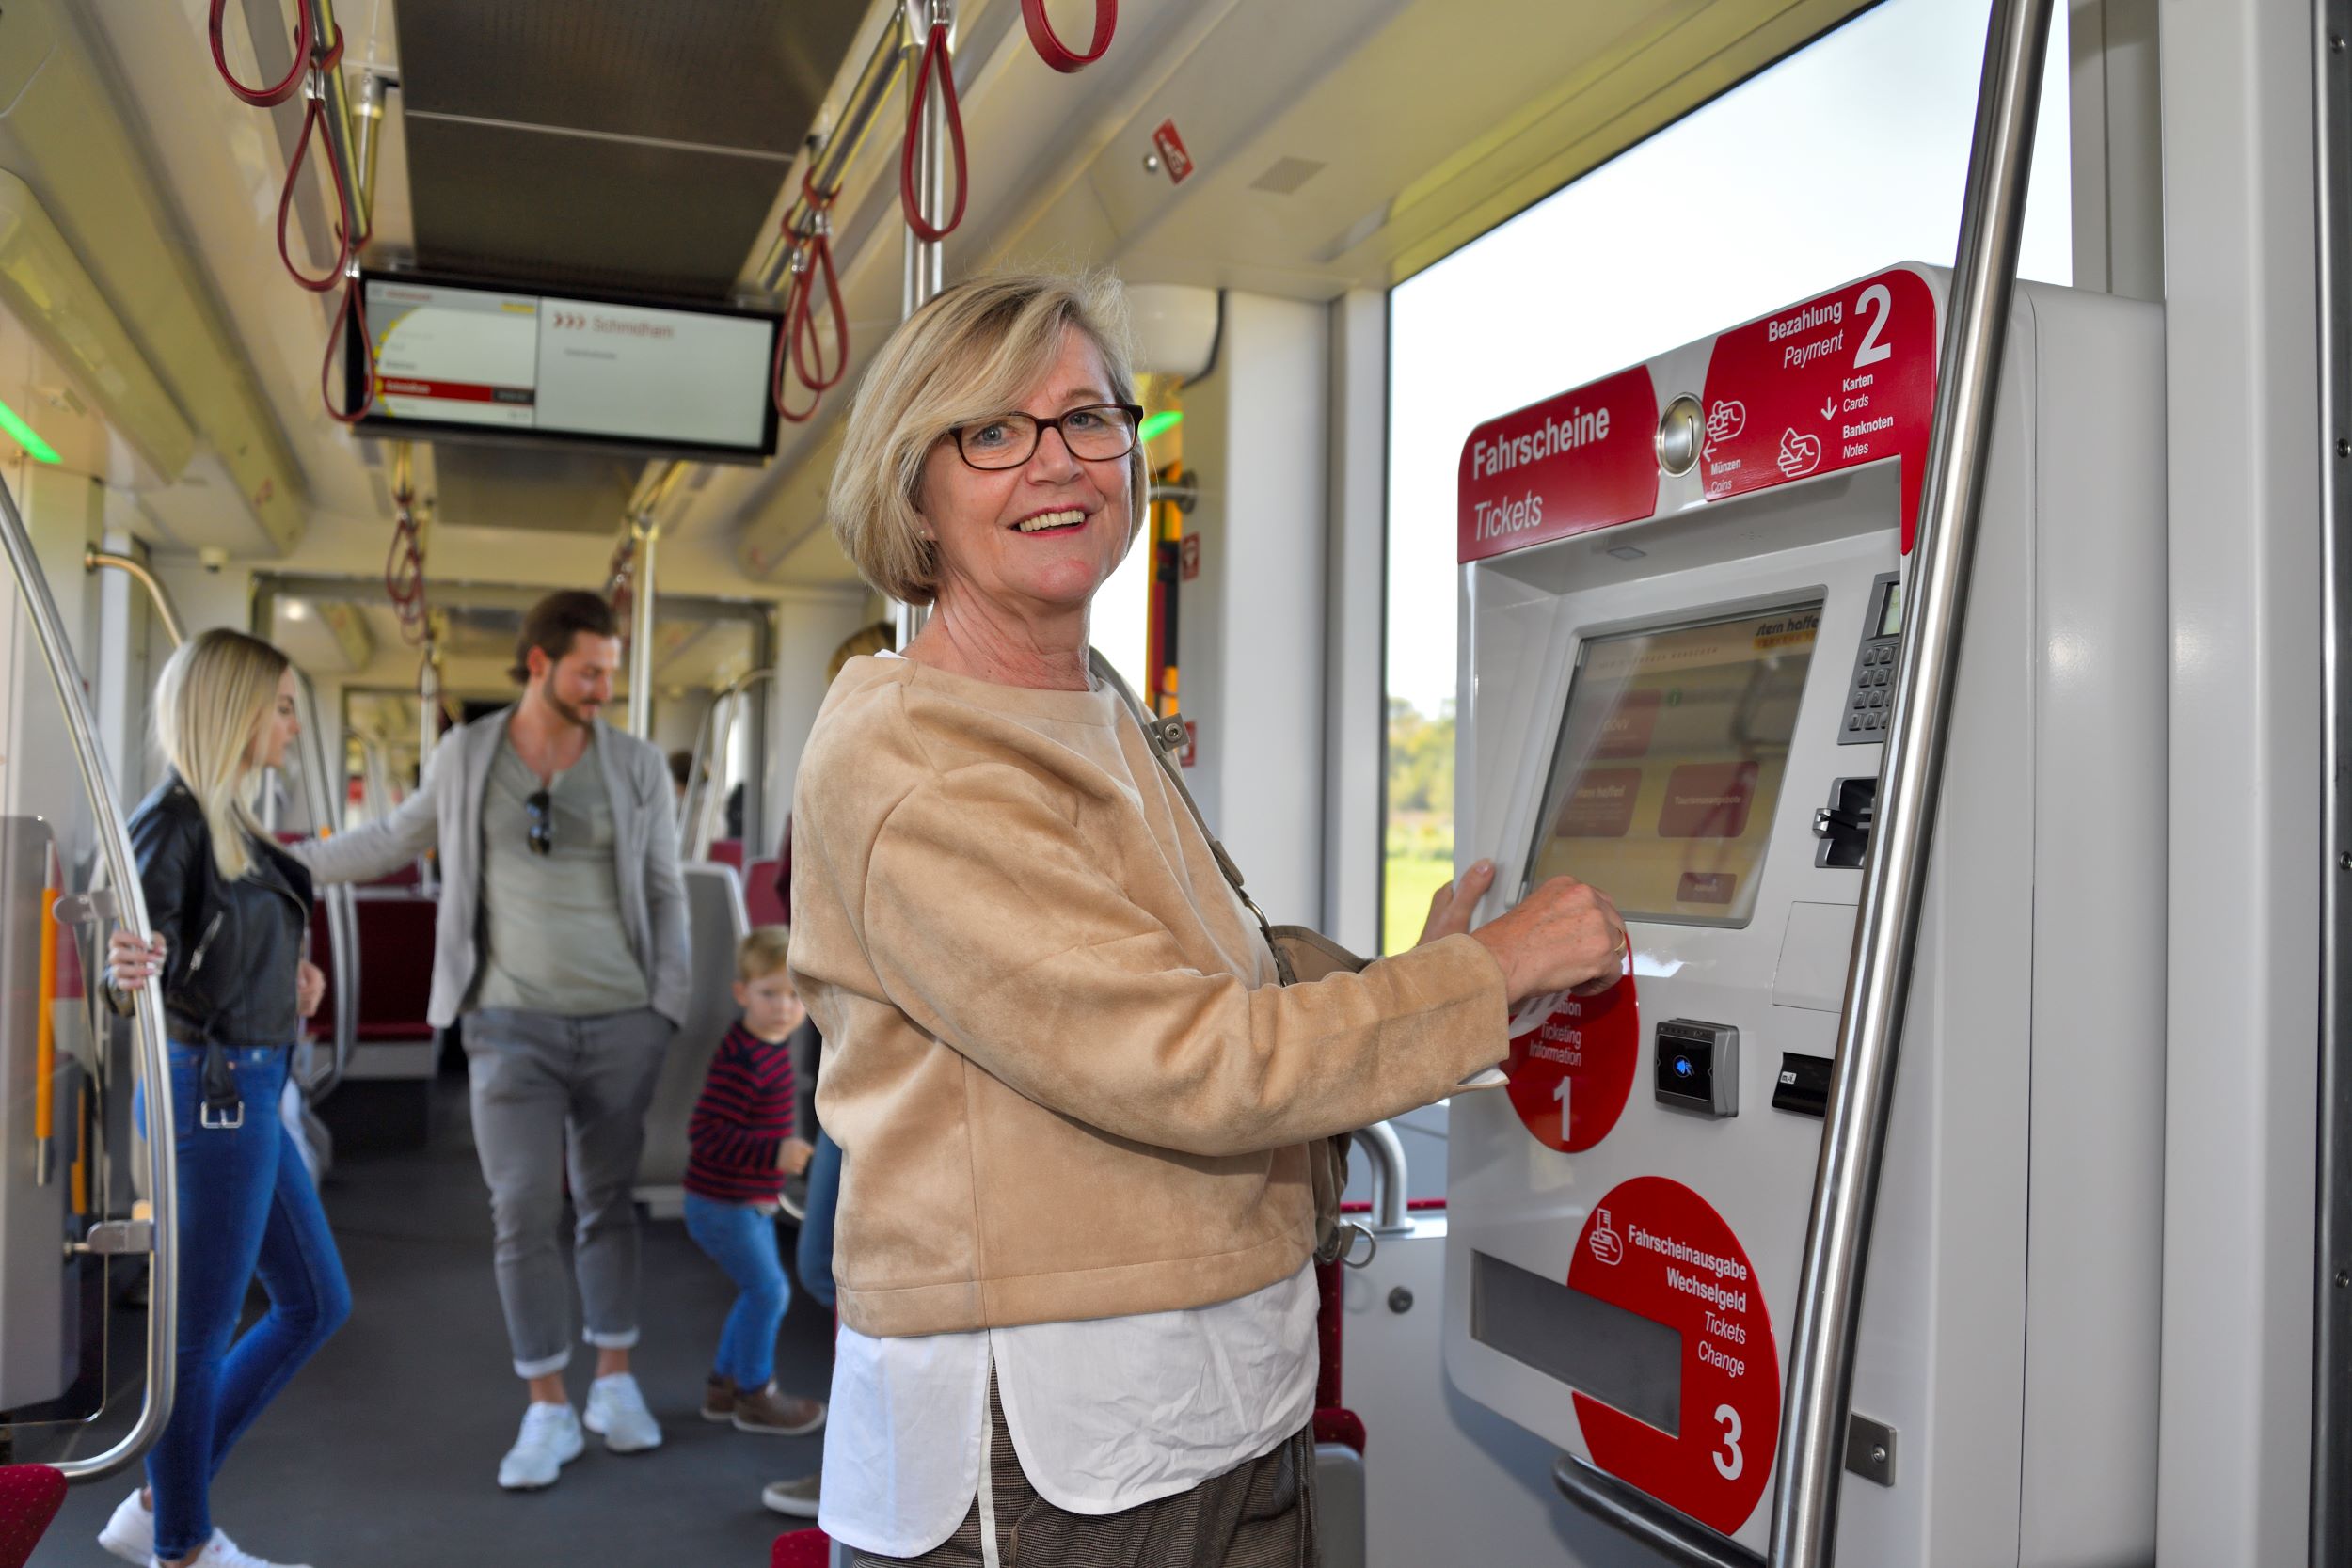 Pensionistin beim Ticketkauf am Ticketautomaten